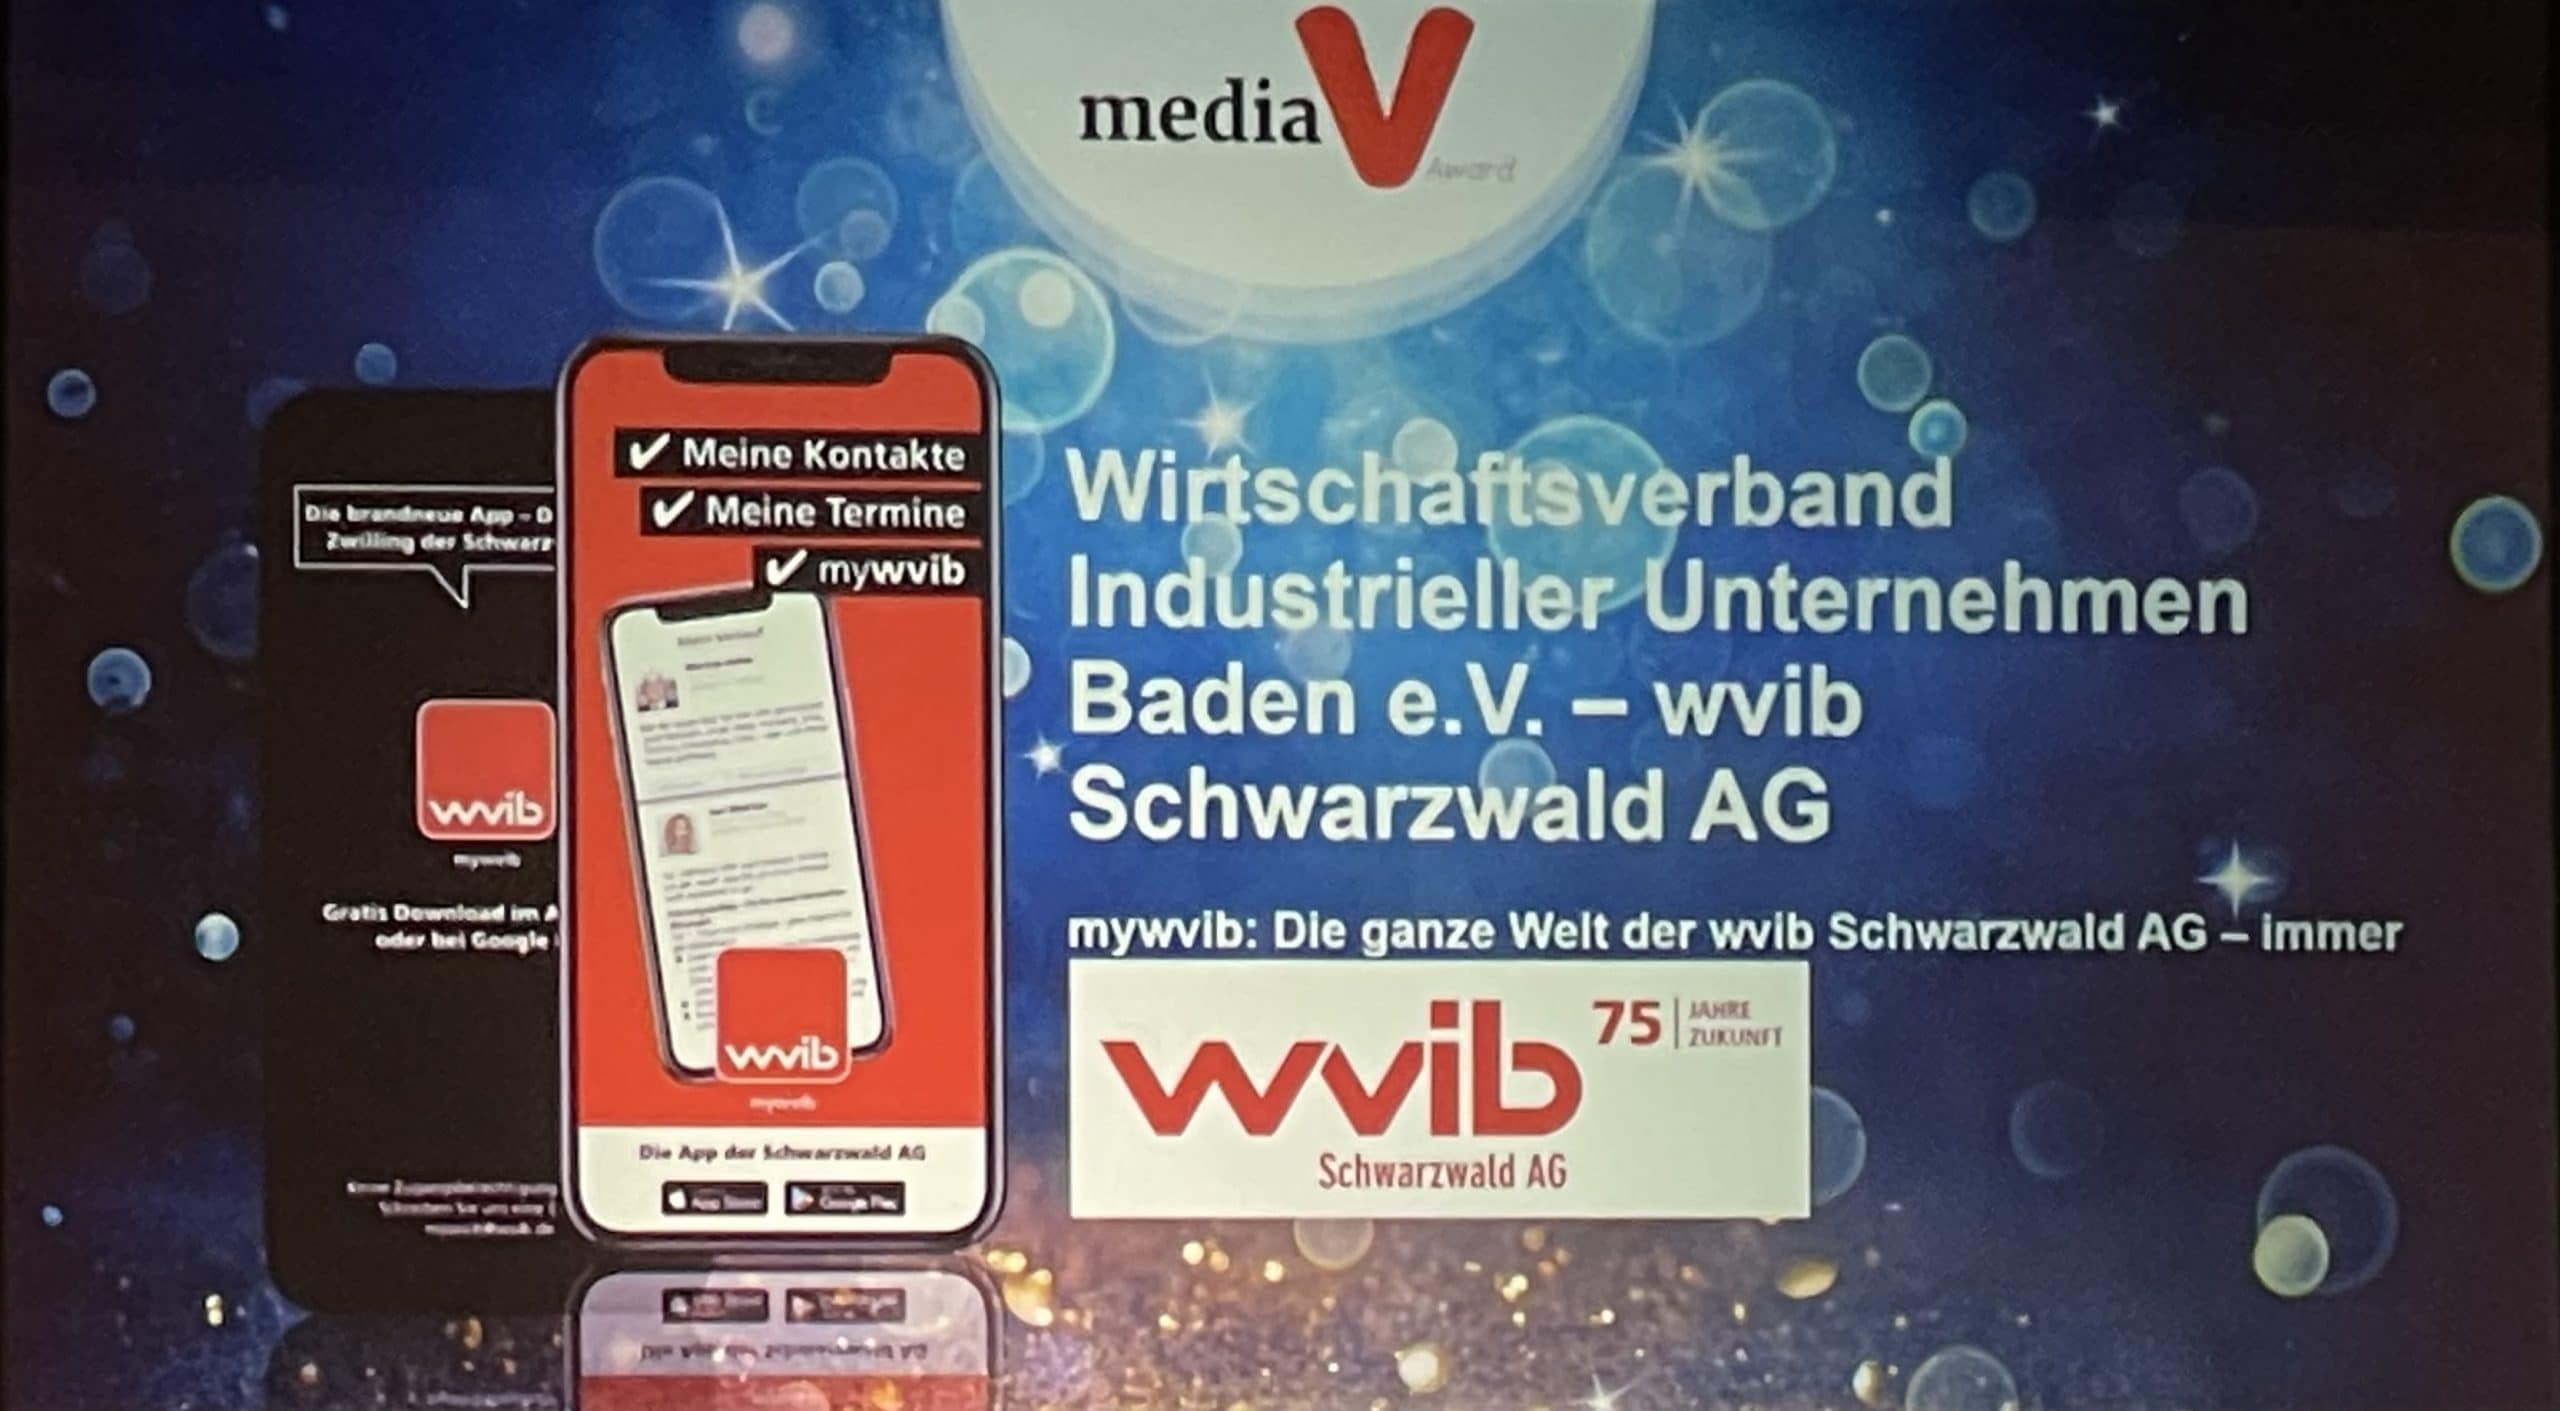 Media V-Award wvib